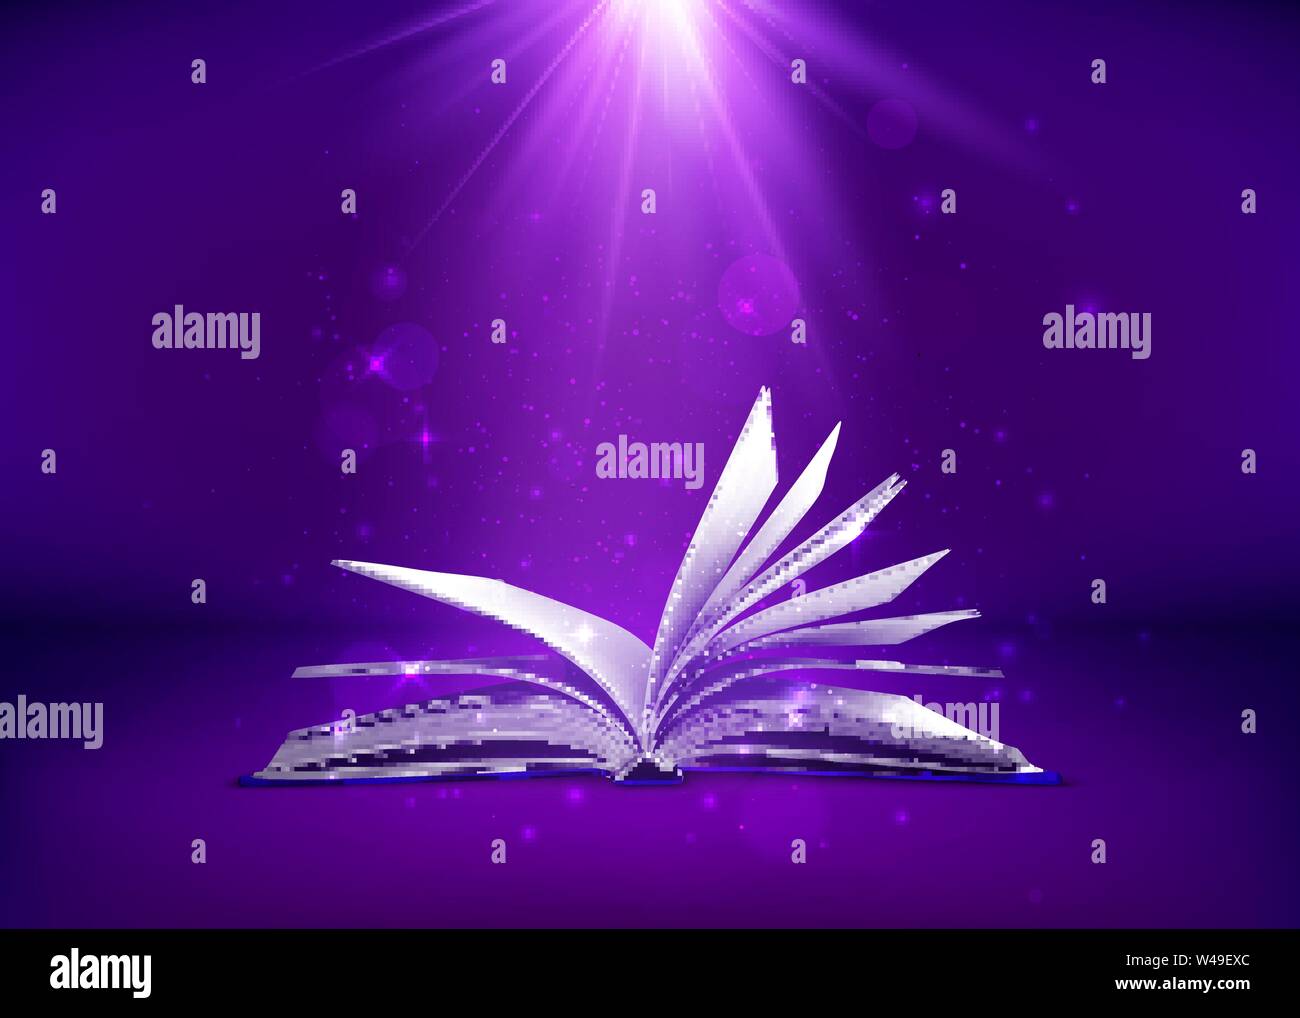 Geheimnis Buch öffnen. Fantasy Buch mit magische Licht funkelt und Sterne. Vector Illustration in violetten Farbtönen Stock Vektor